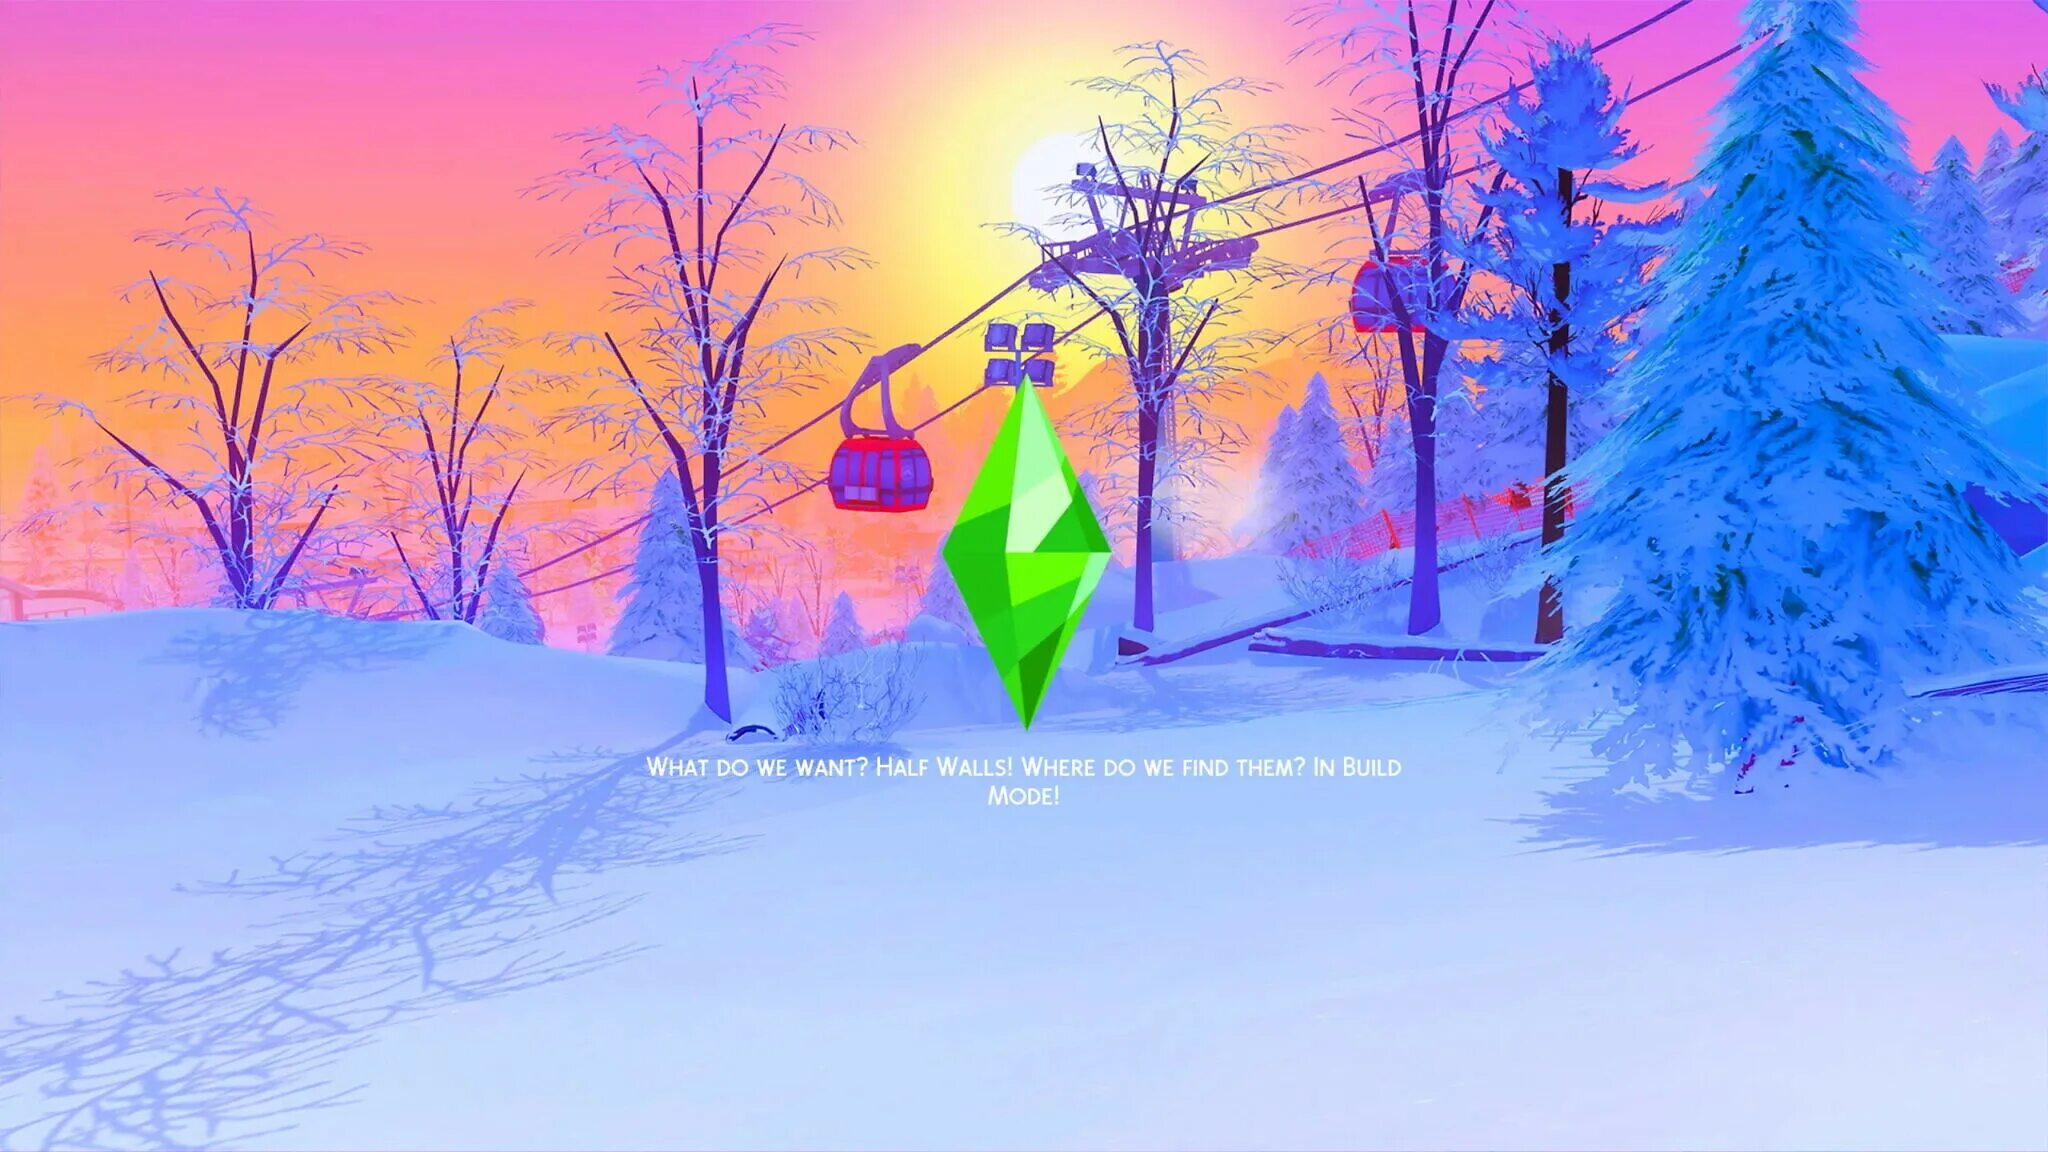 Sims 4 loading screen. Новогодние загрузочные экраны симс 4. Зимние загрузочные экраны для симс 4. Загрузочные экраны «зима и новый год» симс 4. Загрузочные экраны симс 4 зимние на рабочий стол.